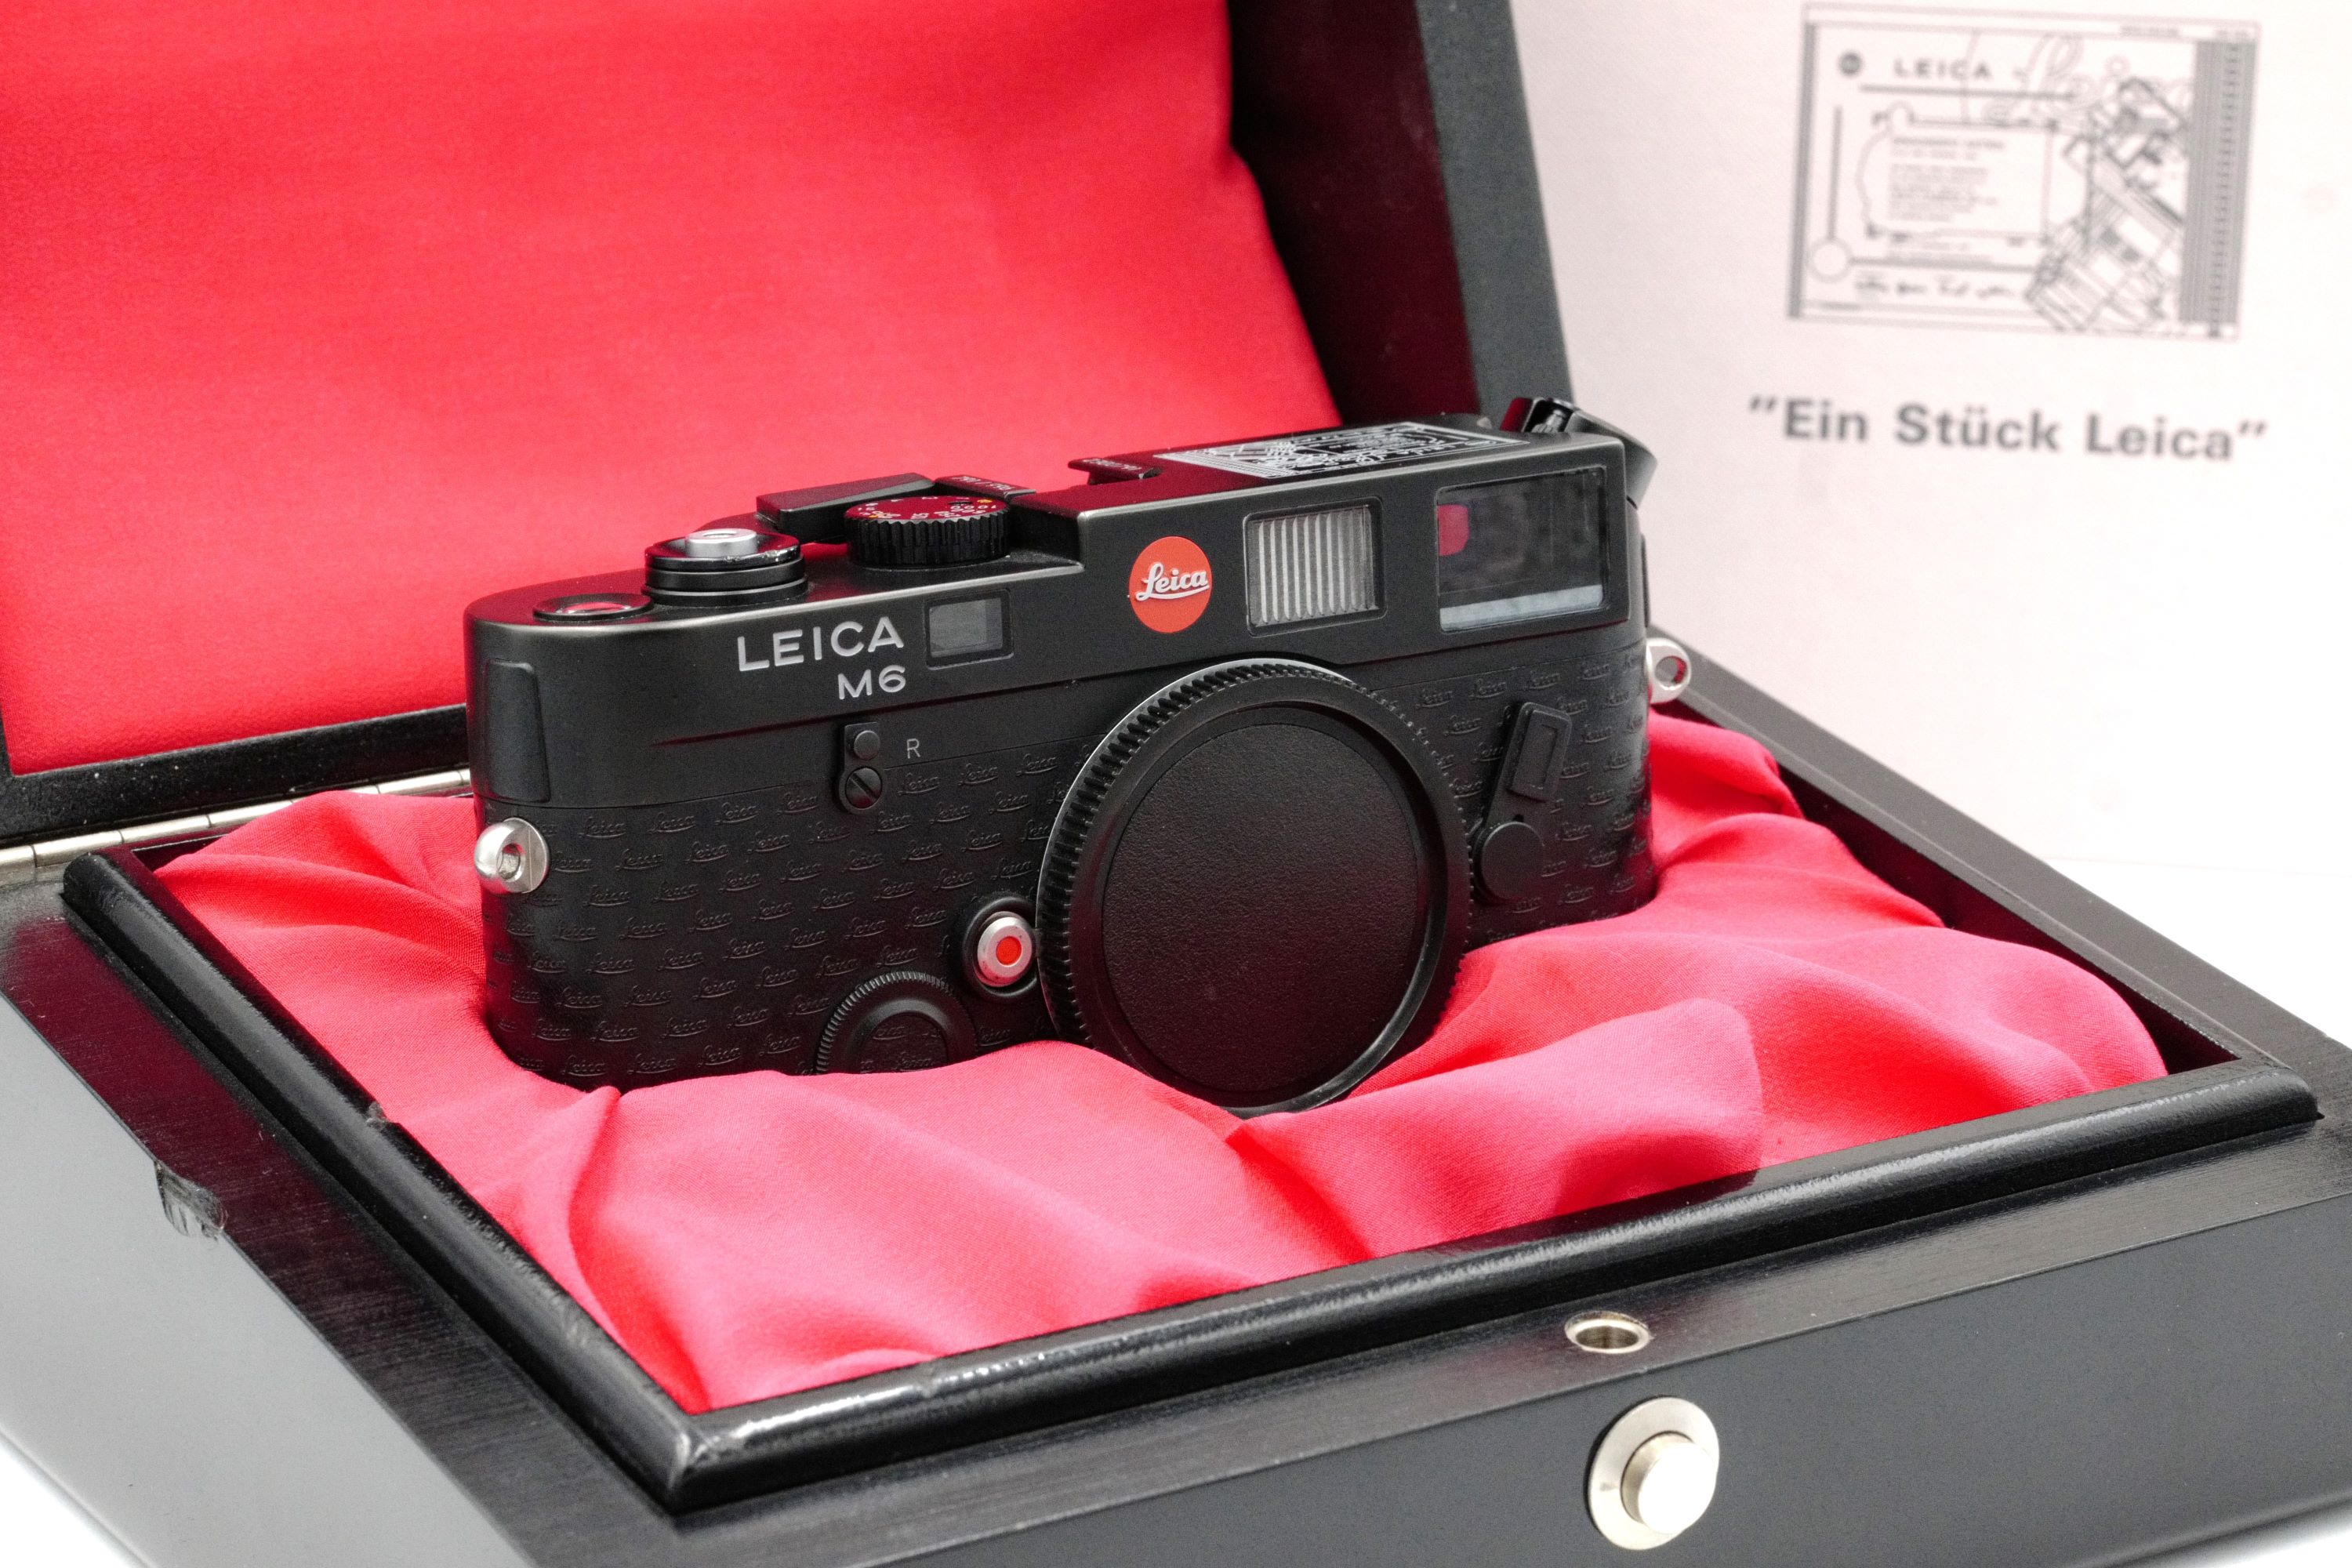 Leica M6 "Ein Stück Leica" Special Edition 